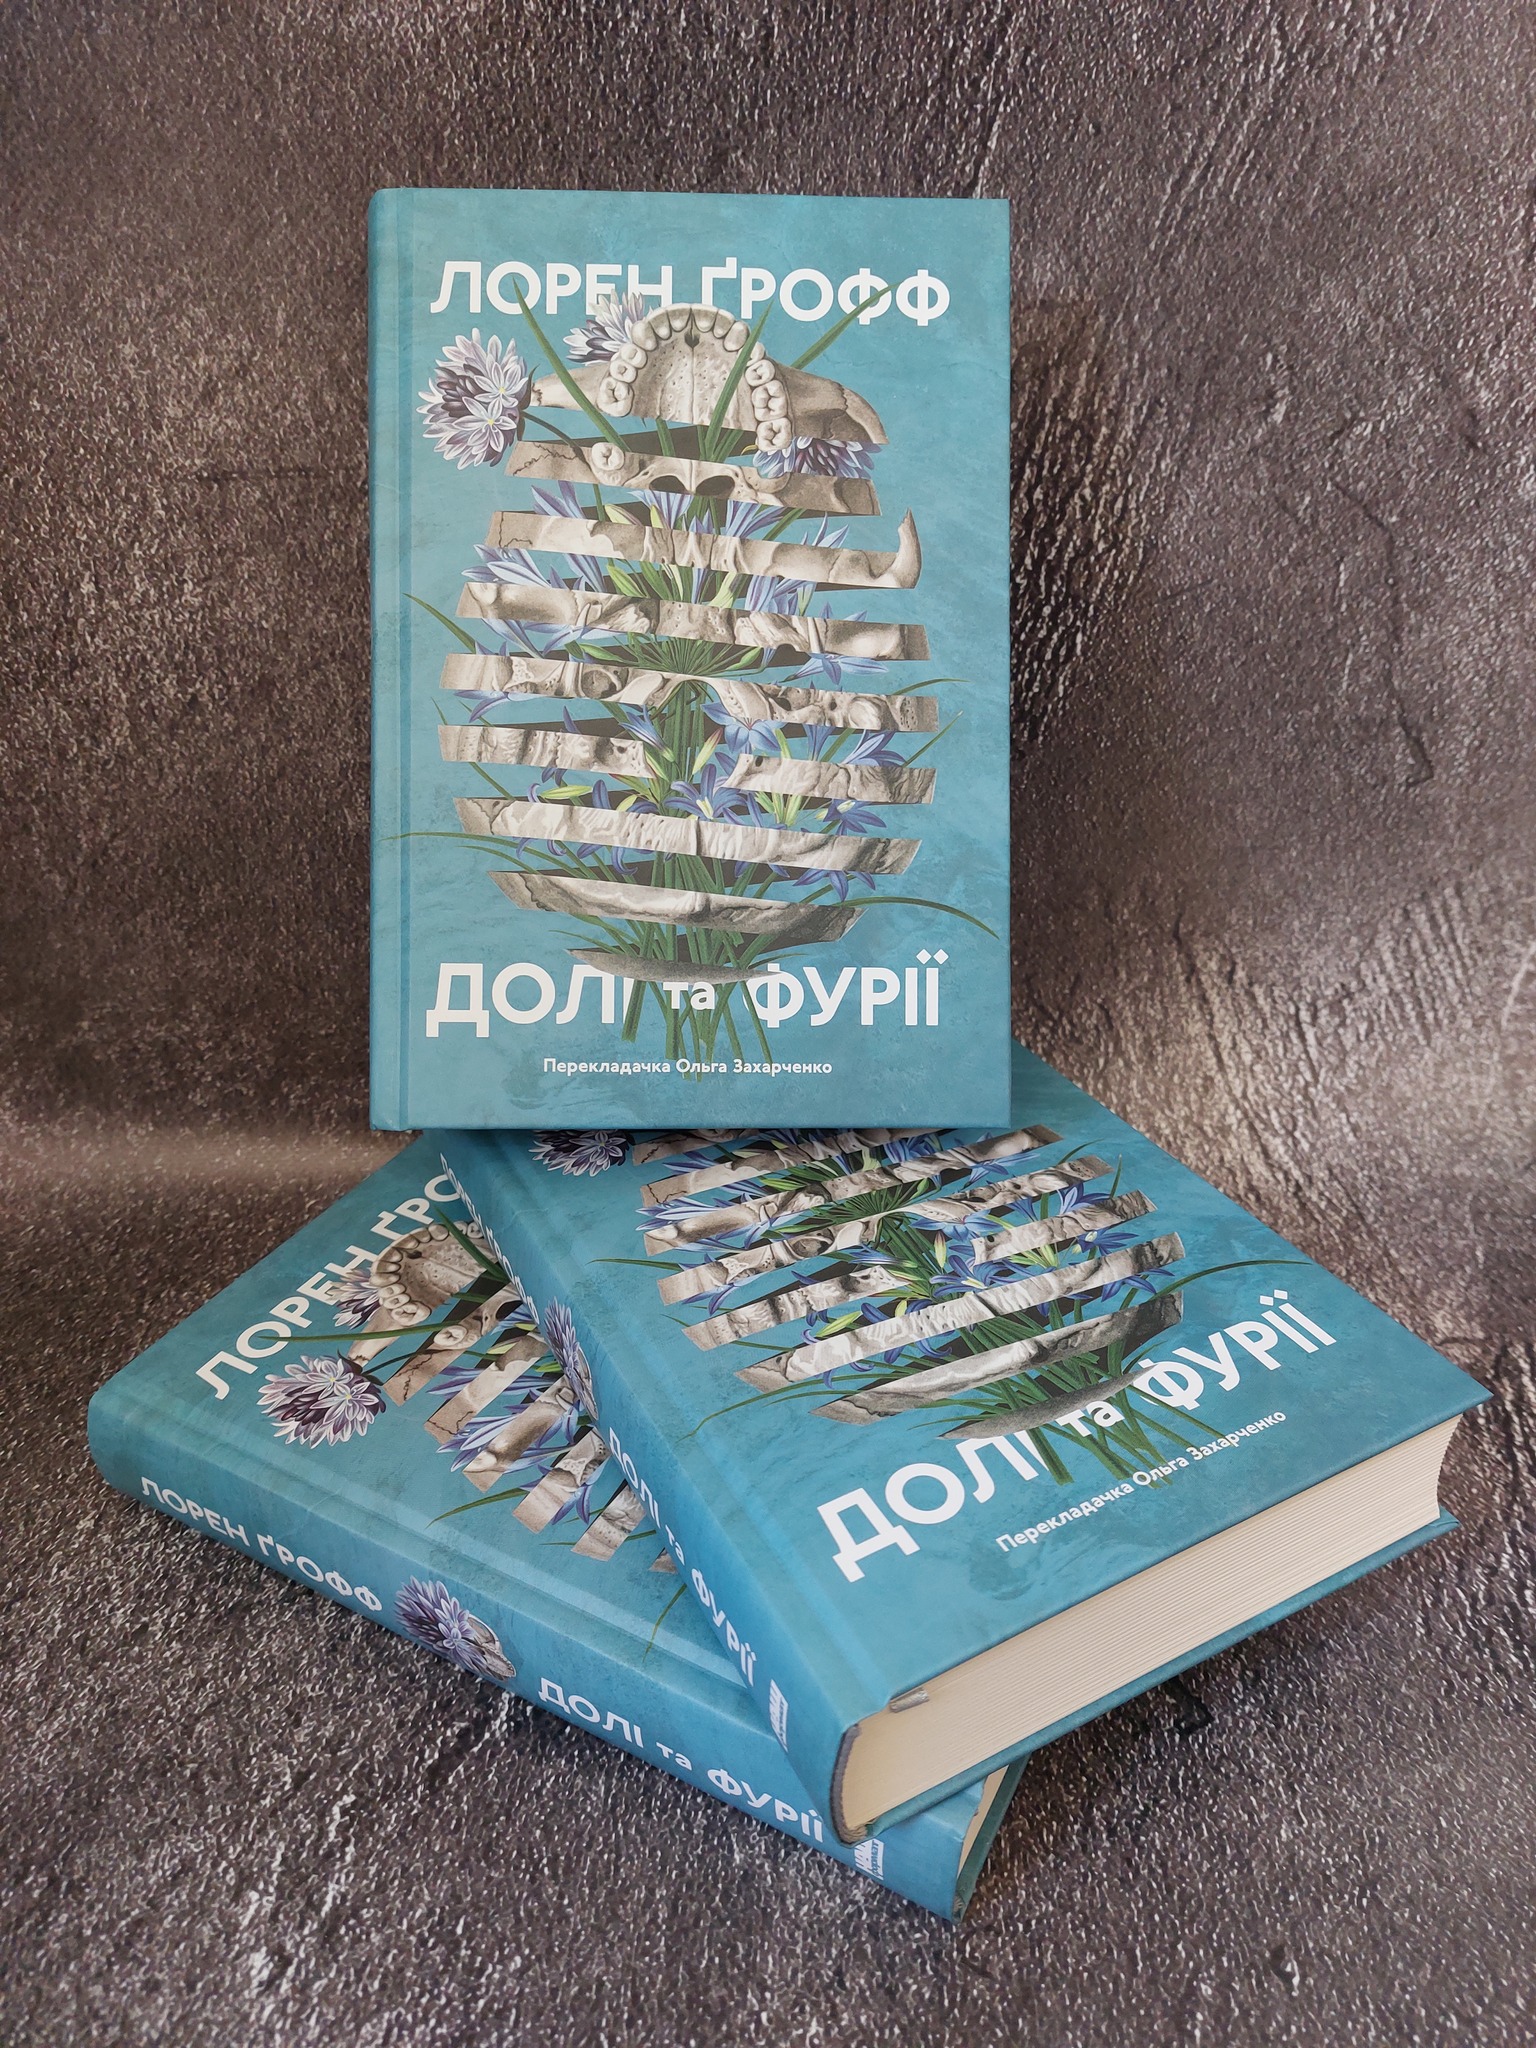 «Долі та фурії» від Лорен Грофф – один з найкращих американських романів останніх 100 років за версією Atlantic